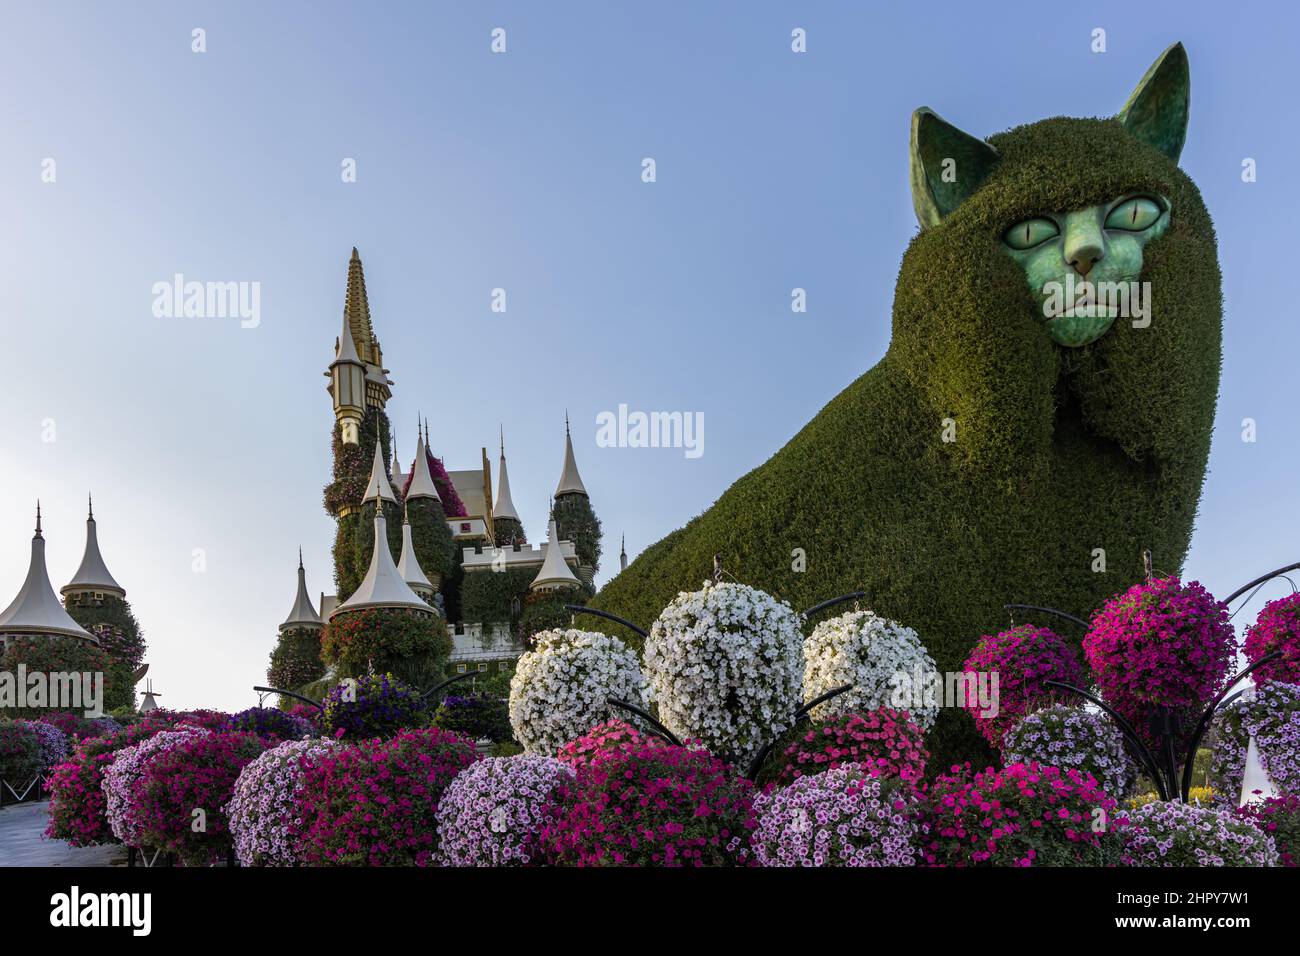 Eine riesige Katze und ein Märchenschloss inmitten der prächtigen Blumenpracht im Dubai Miracle Garden, Vereinigte Arabische Emirate. Stockfoto